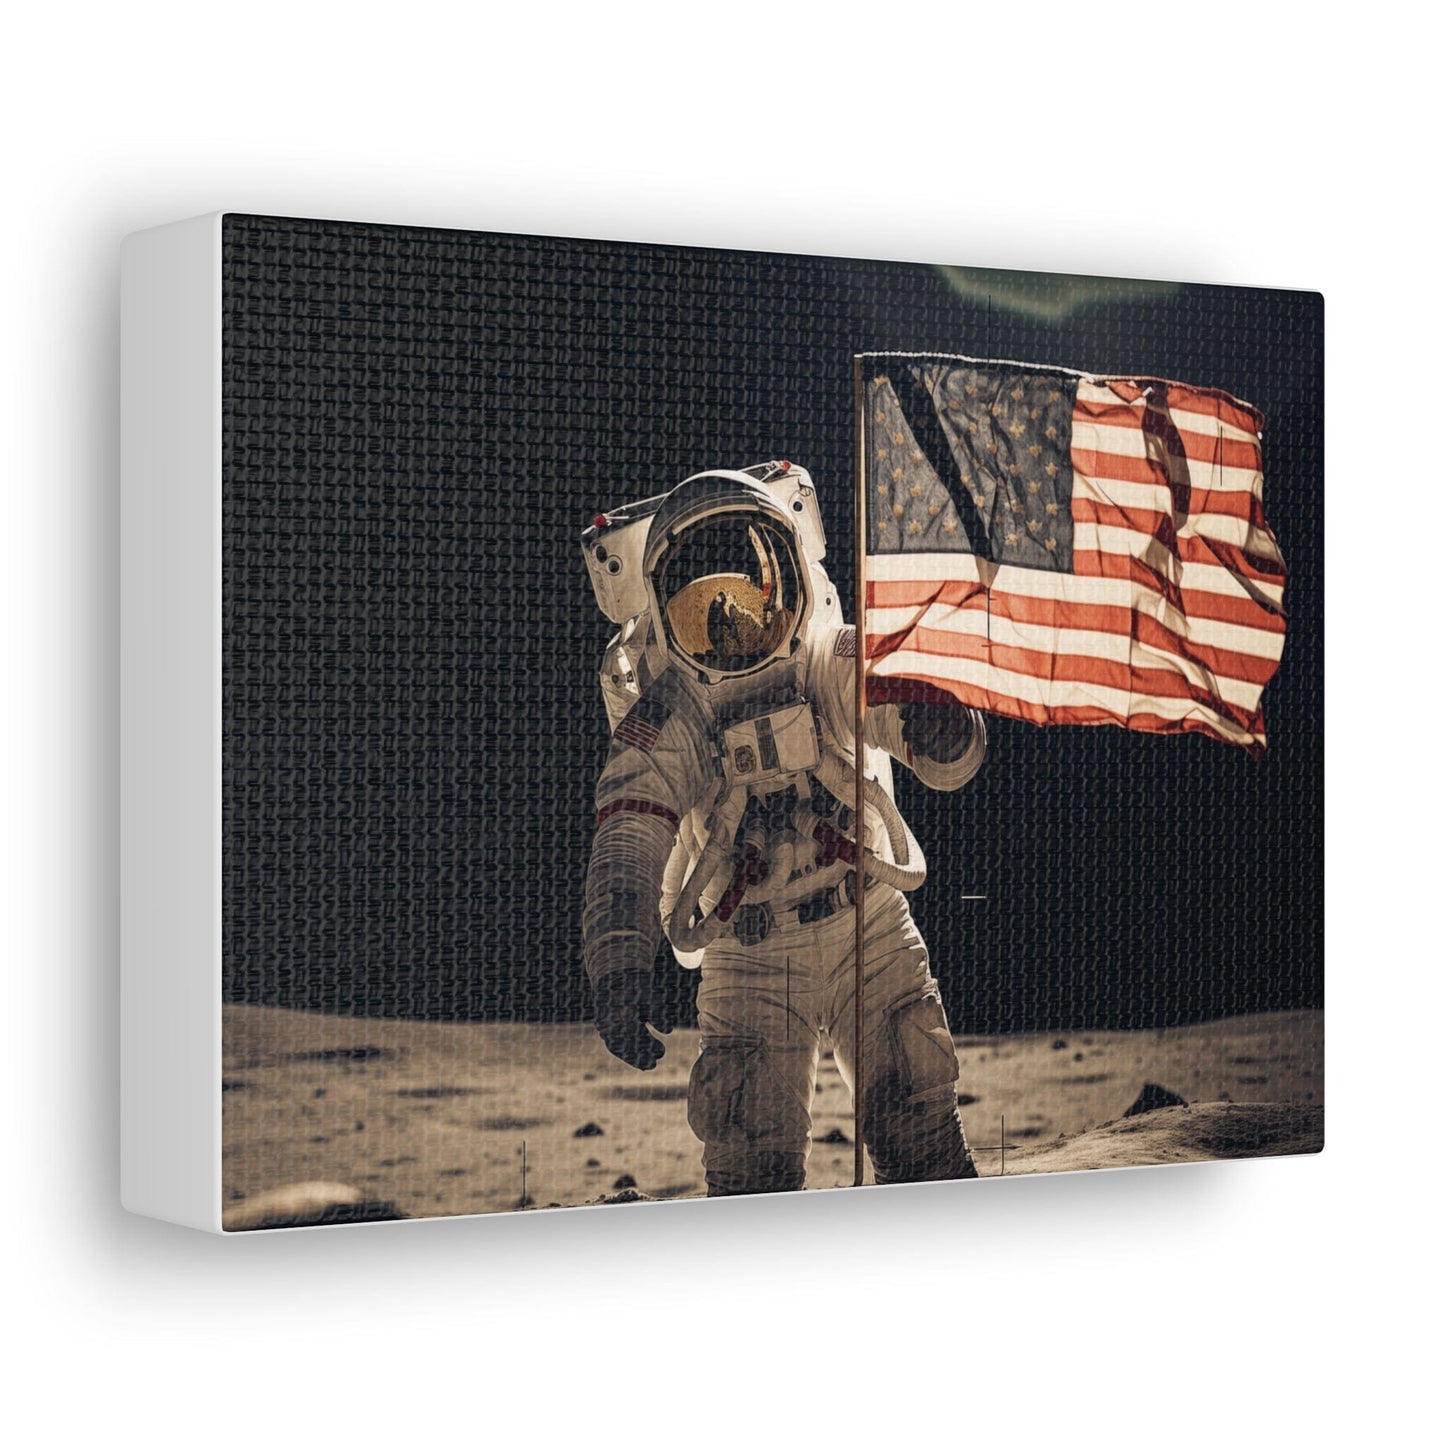 Canvas 7" x 5" / 1.25" Astronaut Moon Flag Planting Canvas